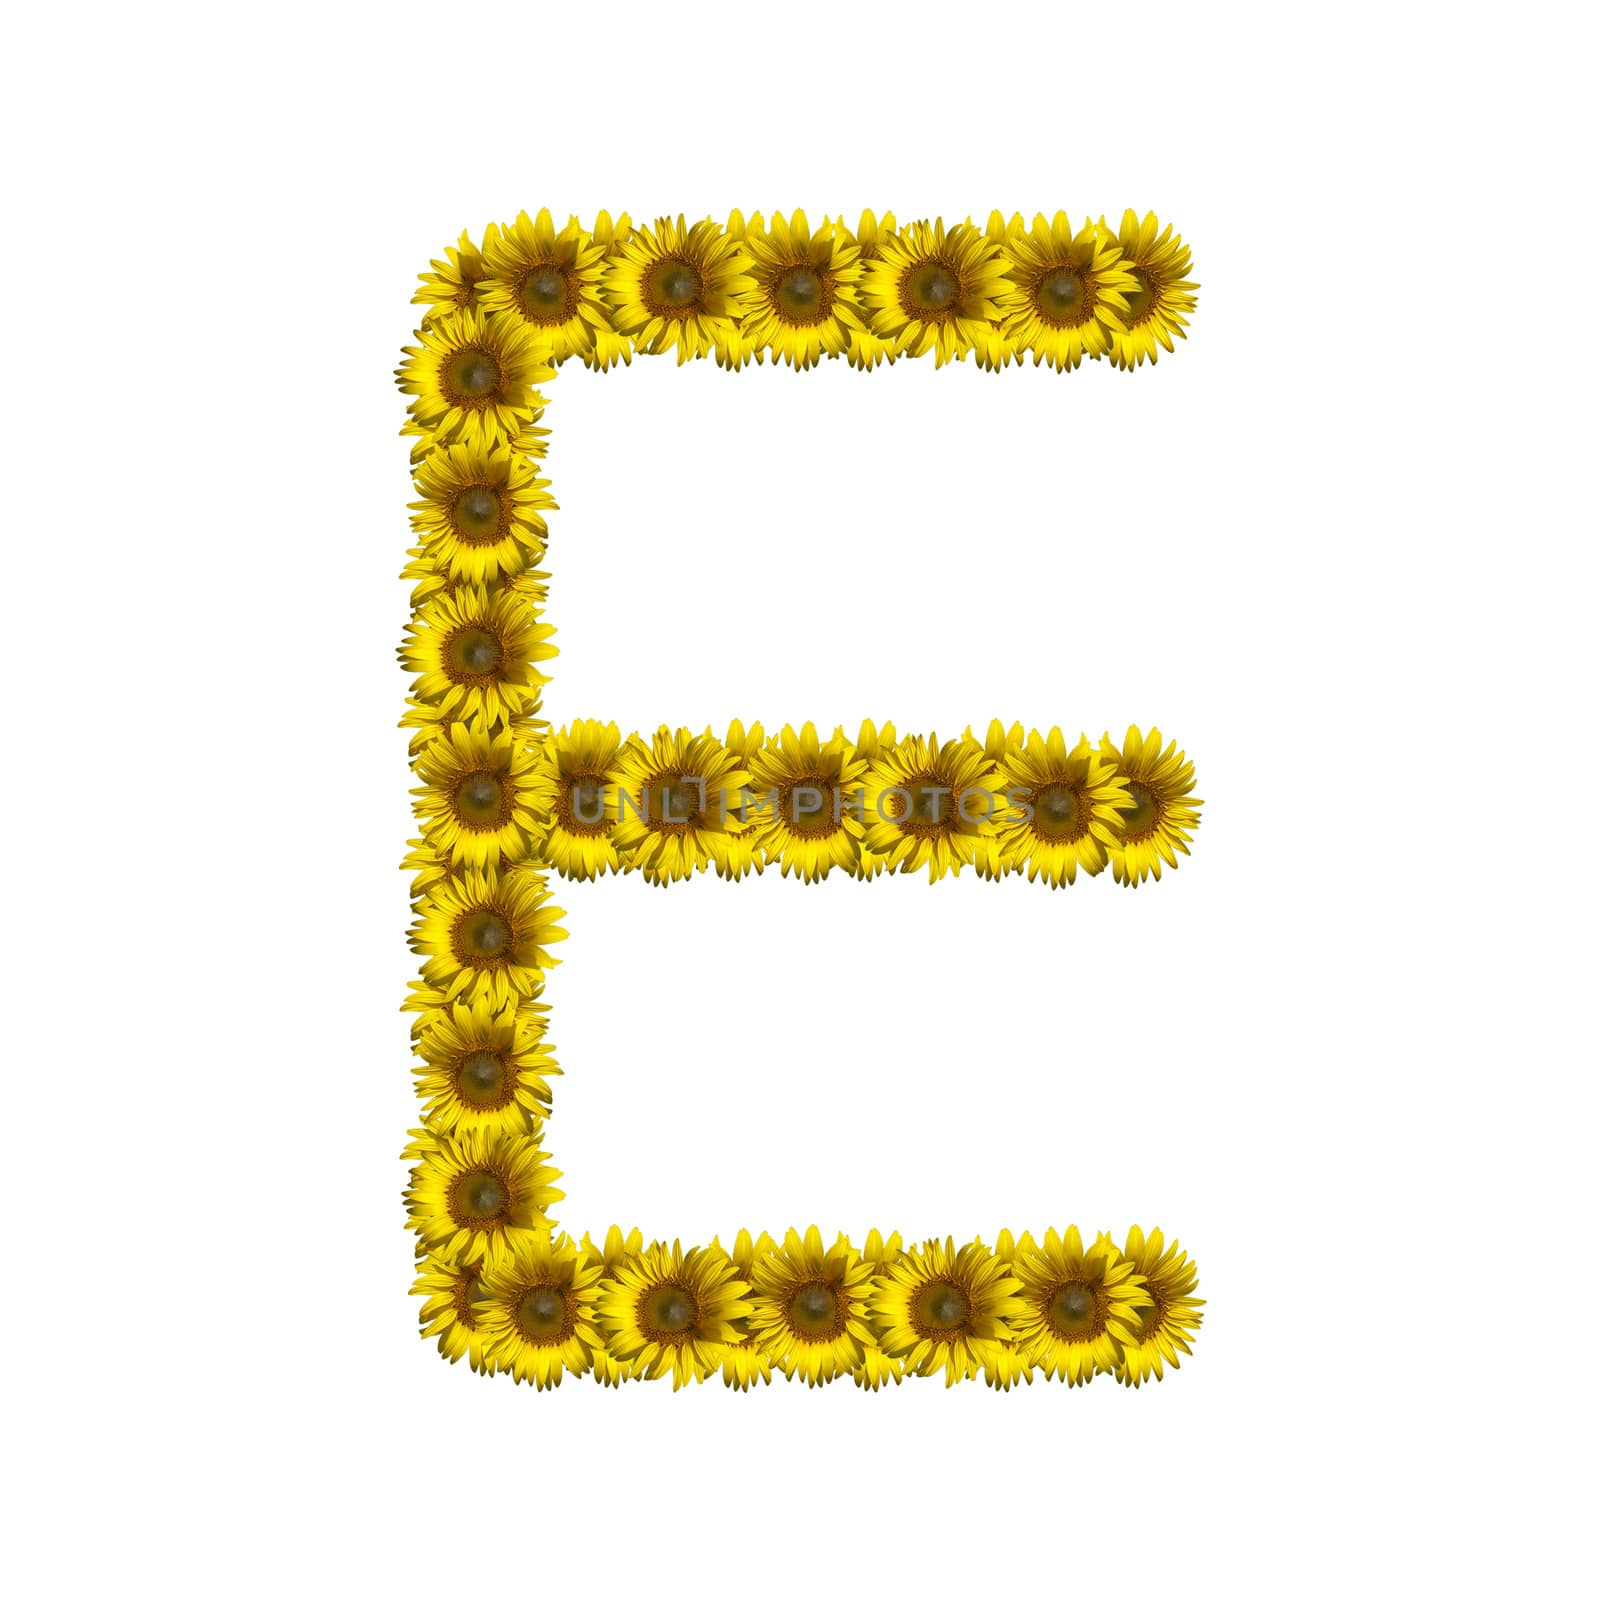 Sunflower alphabet isolated on white background, letter E